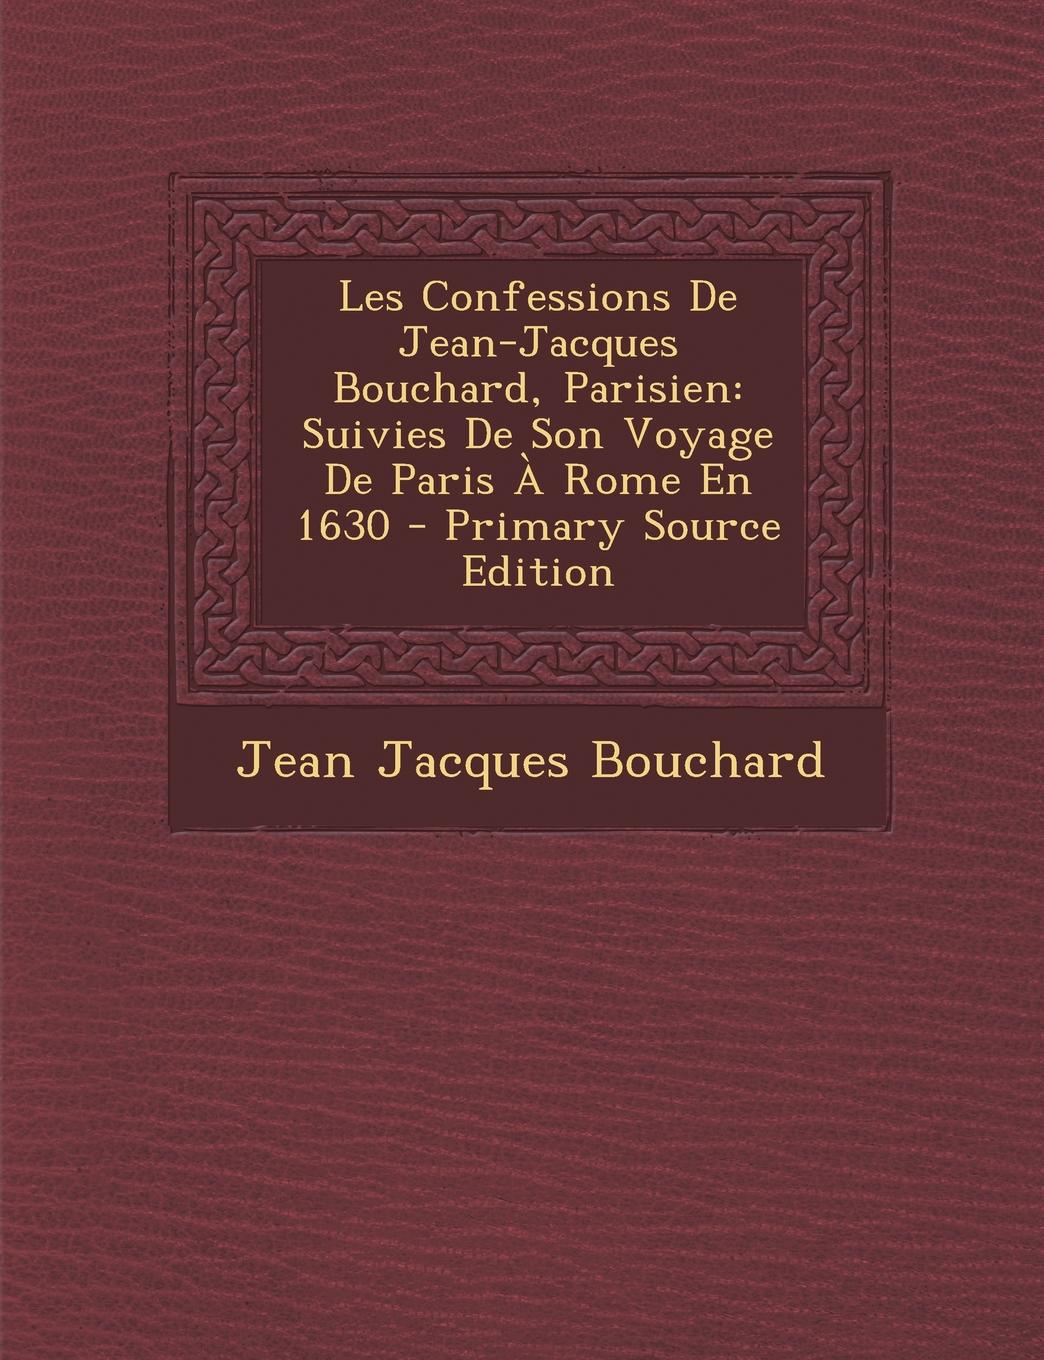 Les Confessions De Jean-Jacques Bouchard, Parisien. Suivies De Son Voyage De Paris A Rome En 1630